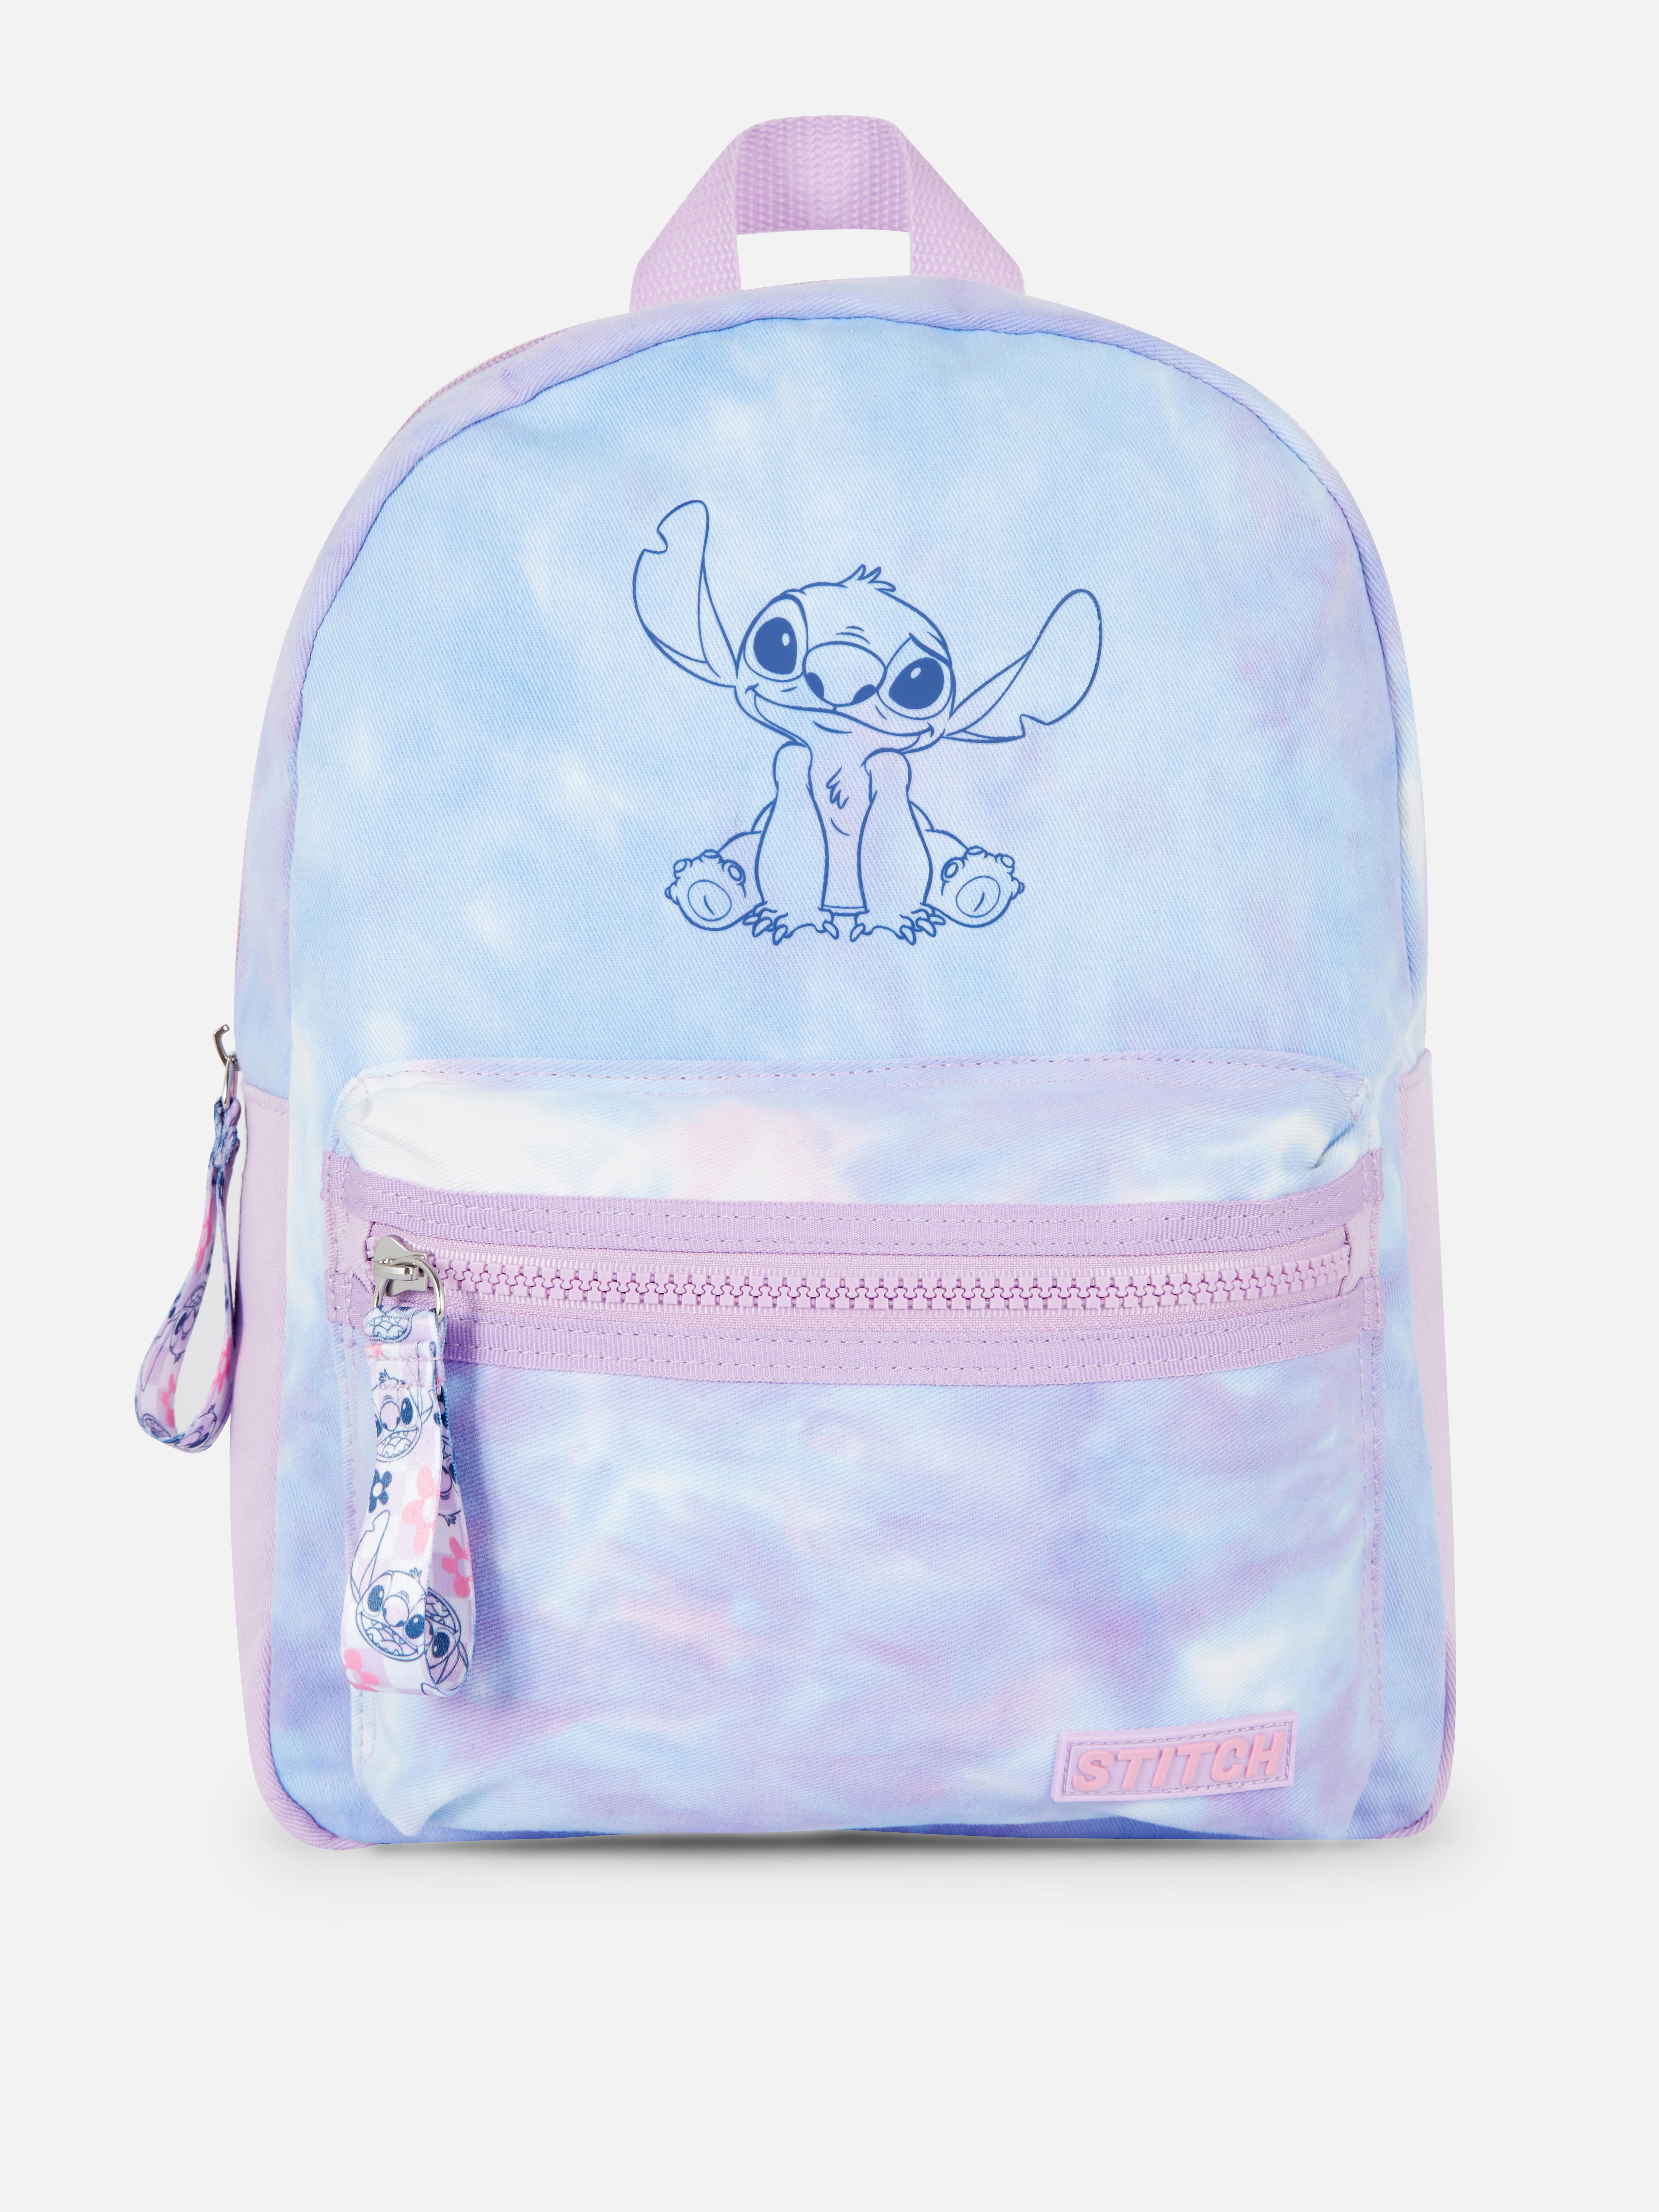 Disney’s Lilo & Stitch Tie-Dye Backpack